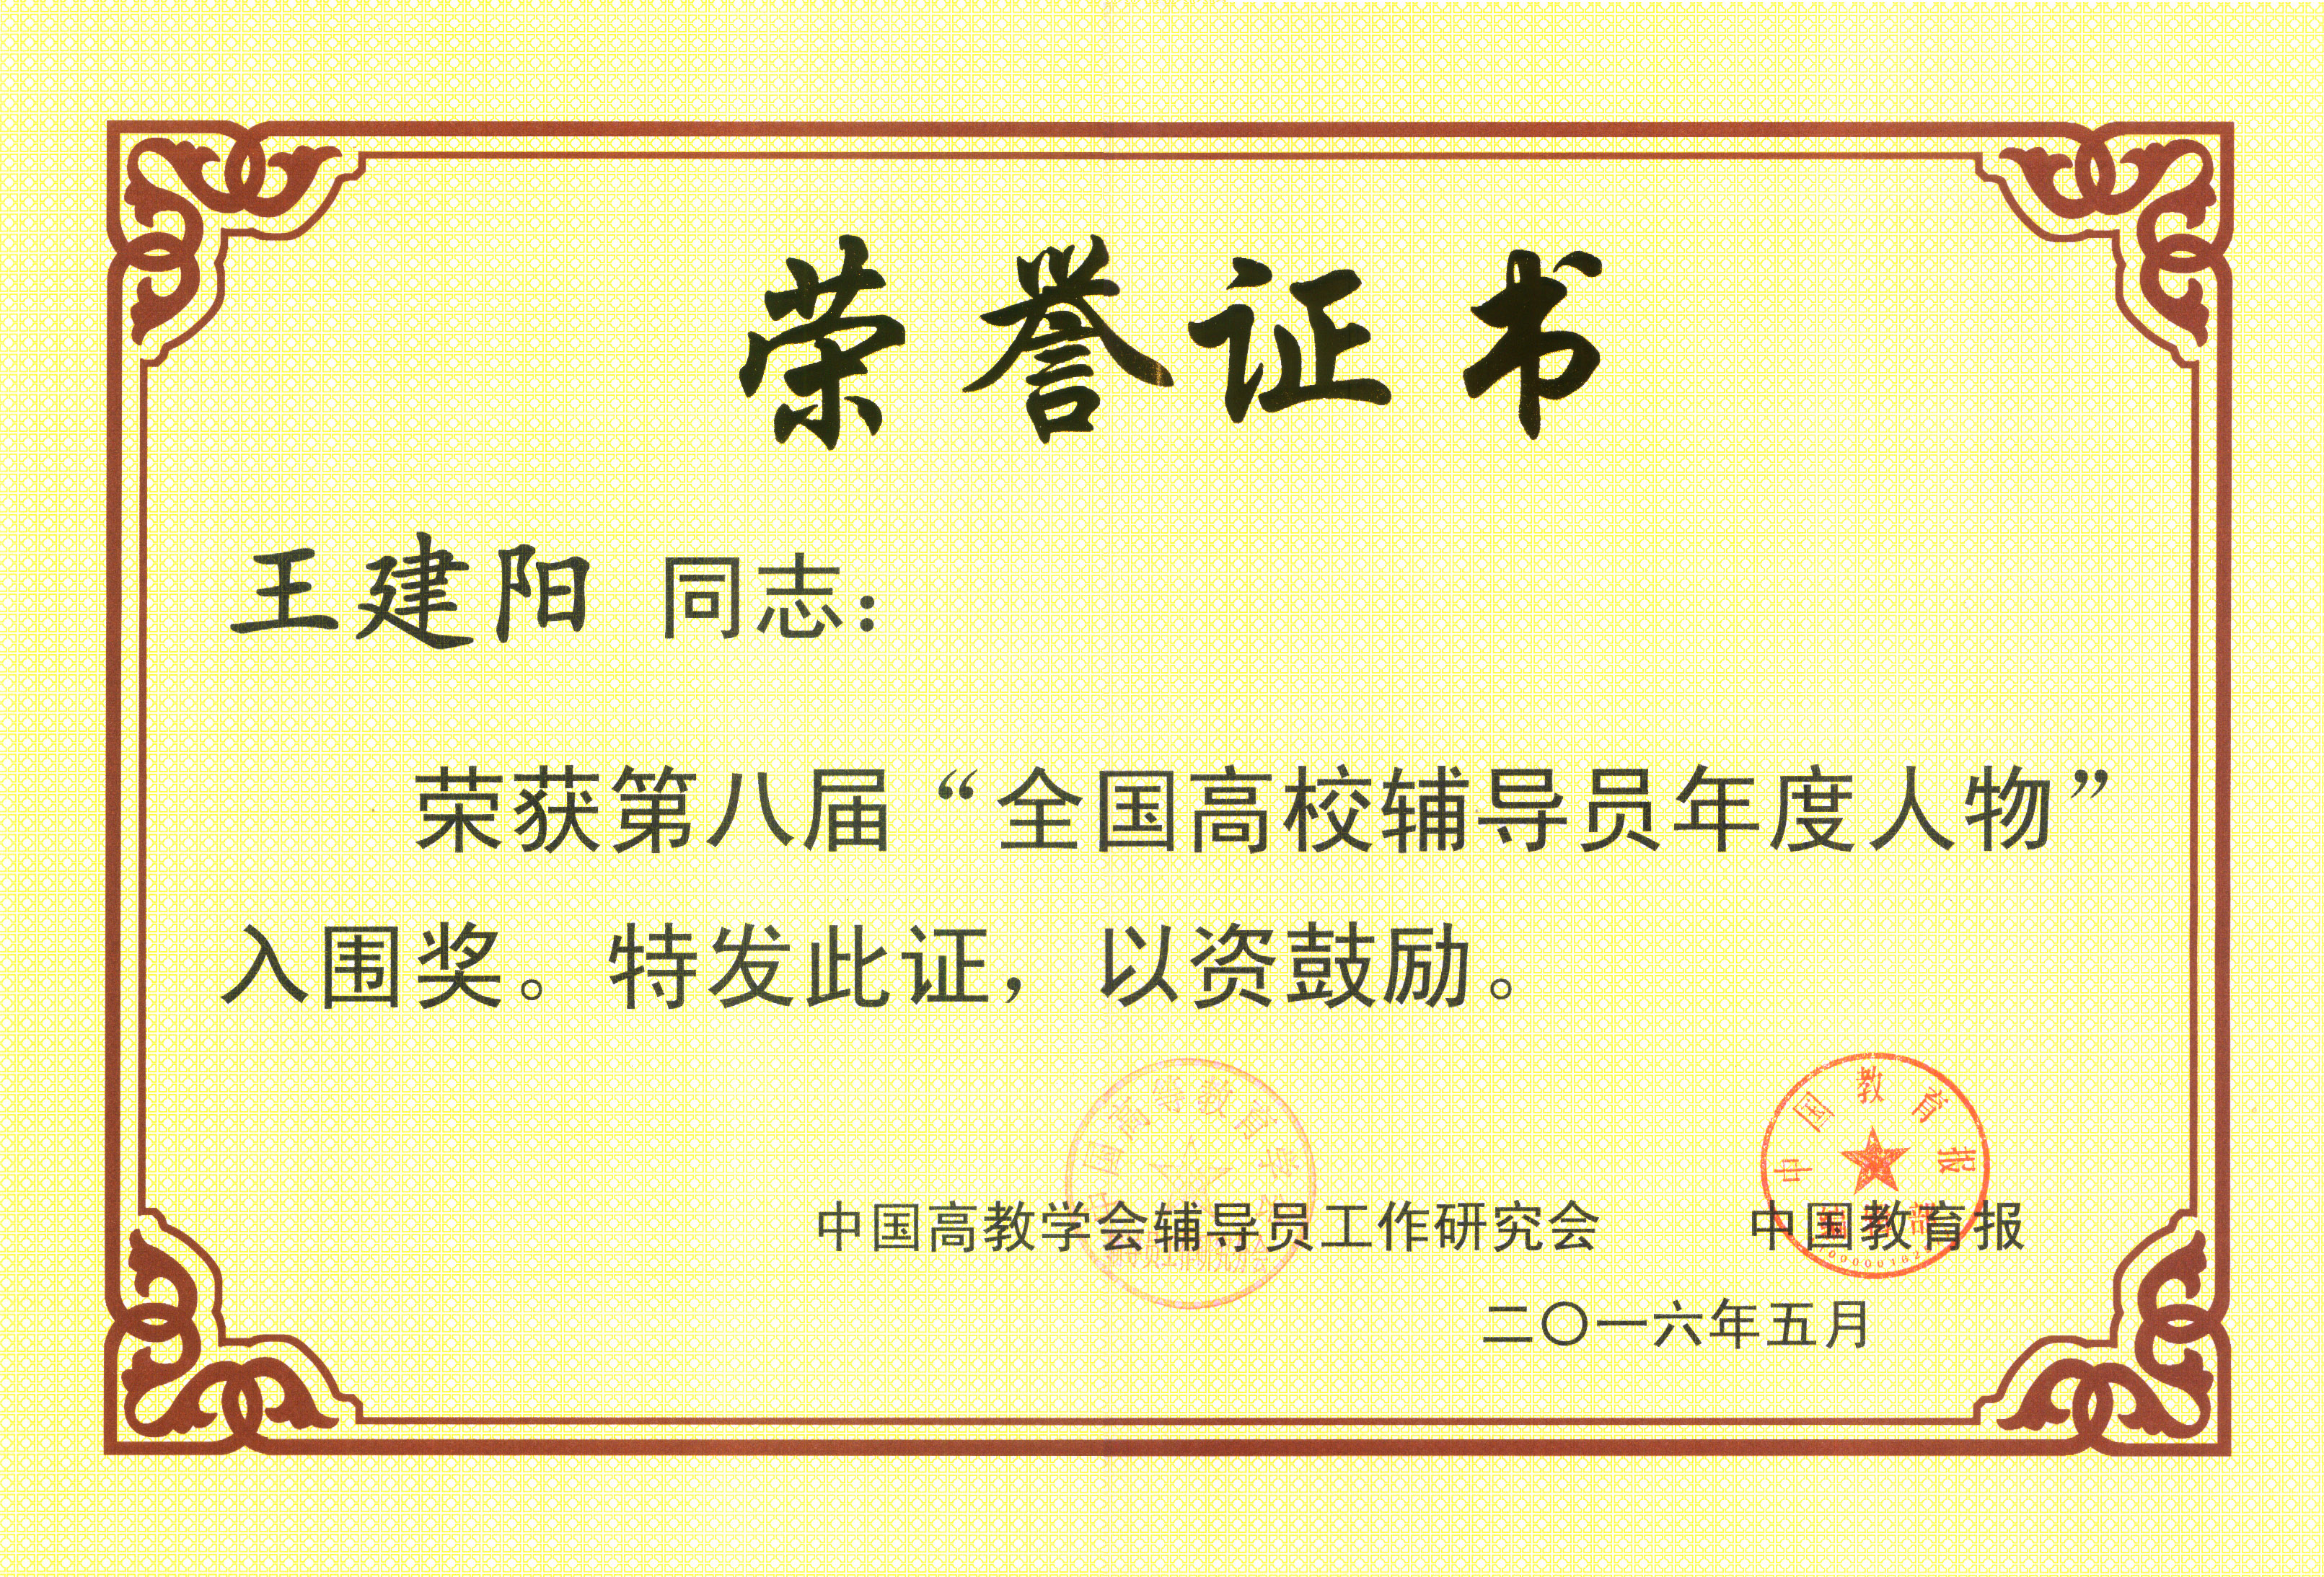 王建阳获第八届全国辅导员年度人物入围奖